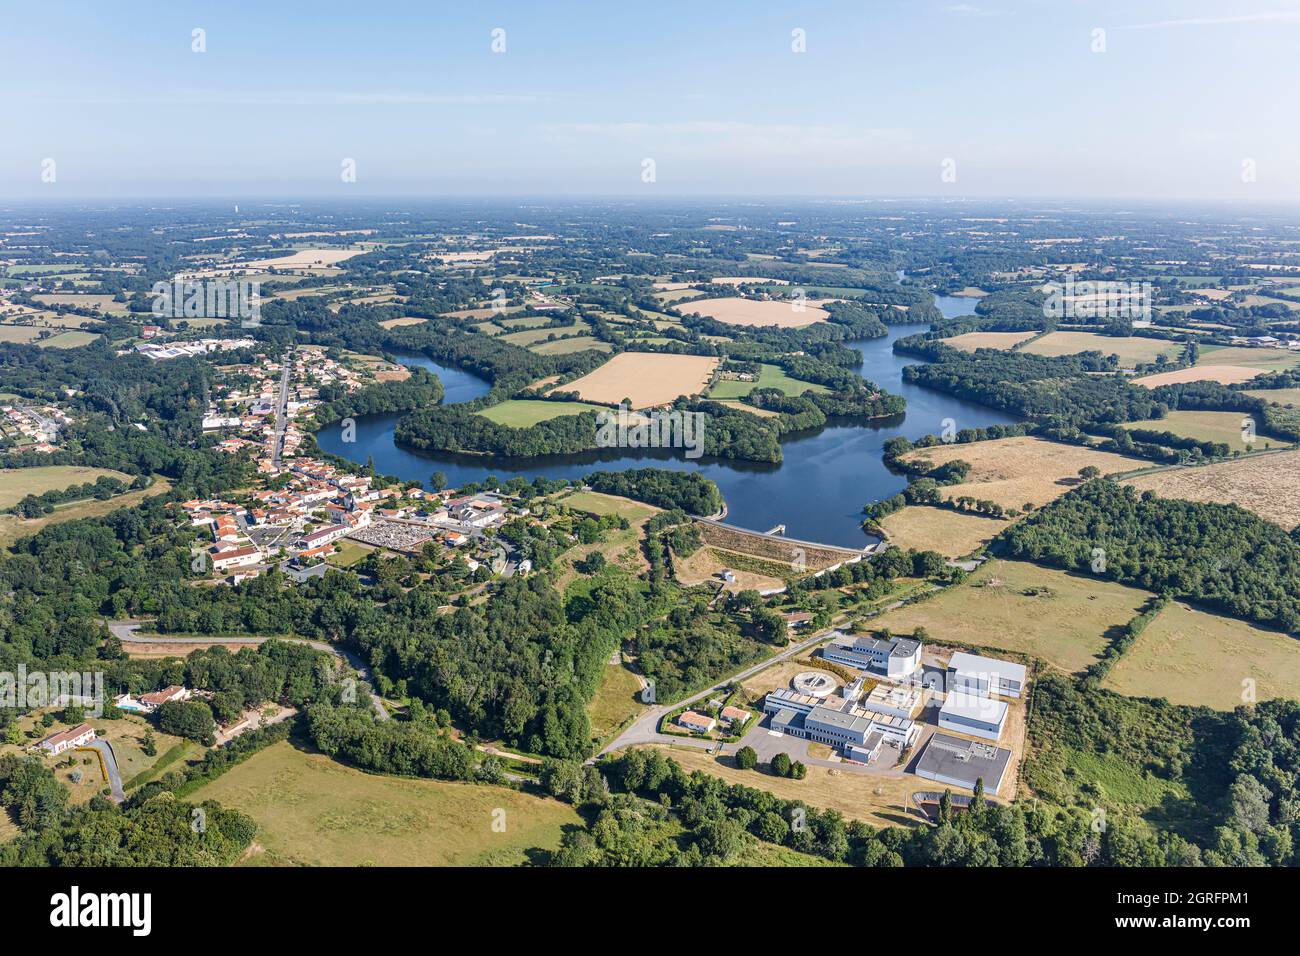 France, Vendée, St Vincent sur Graon, le village, le lac et l'usine de traitement des eaux (vue aérienne) Banque D'Images